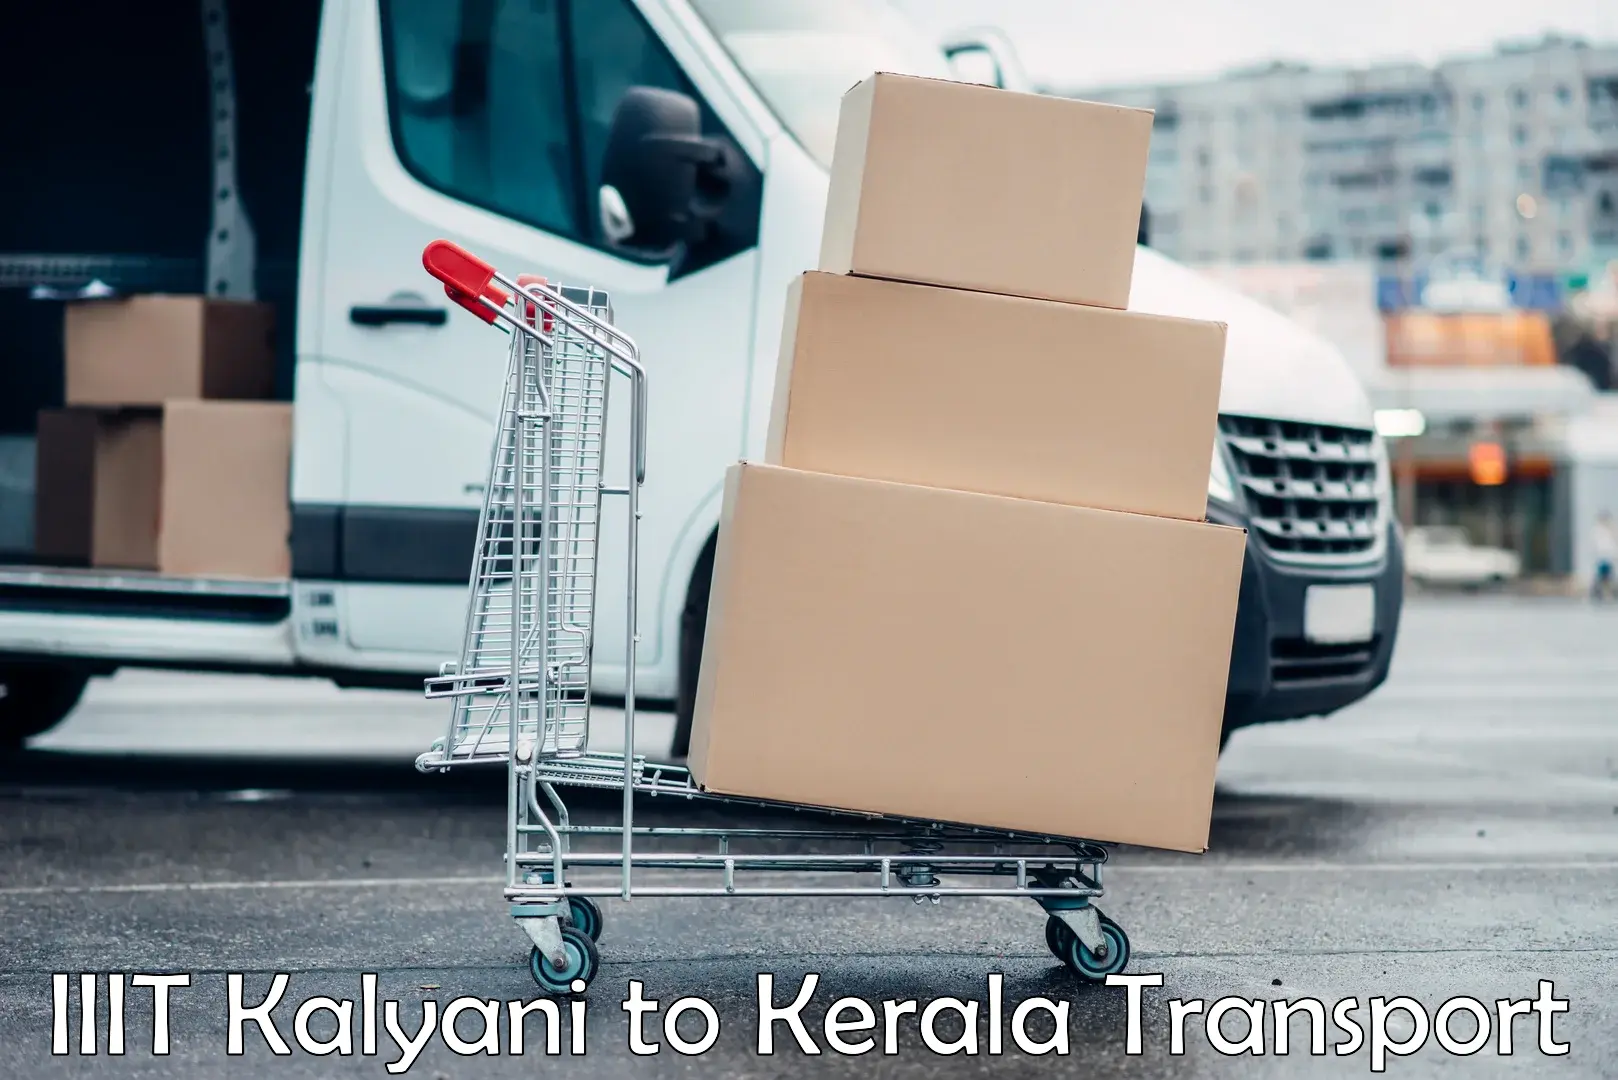 Transport in sharing IIIT Kalyani to Ernakulam